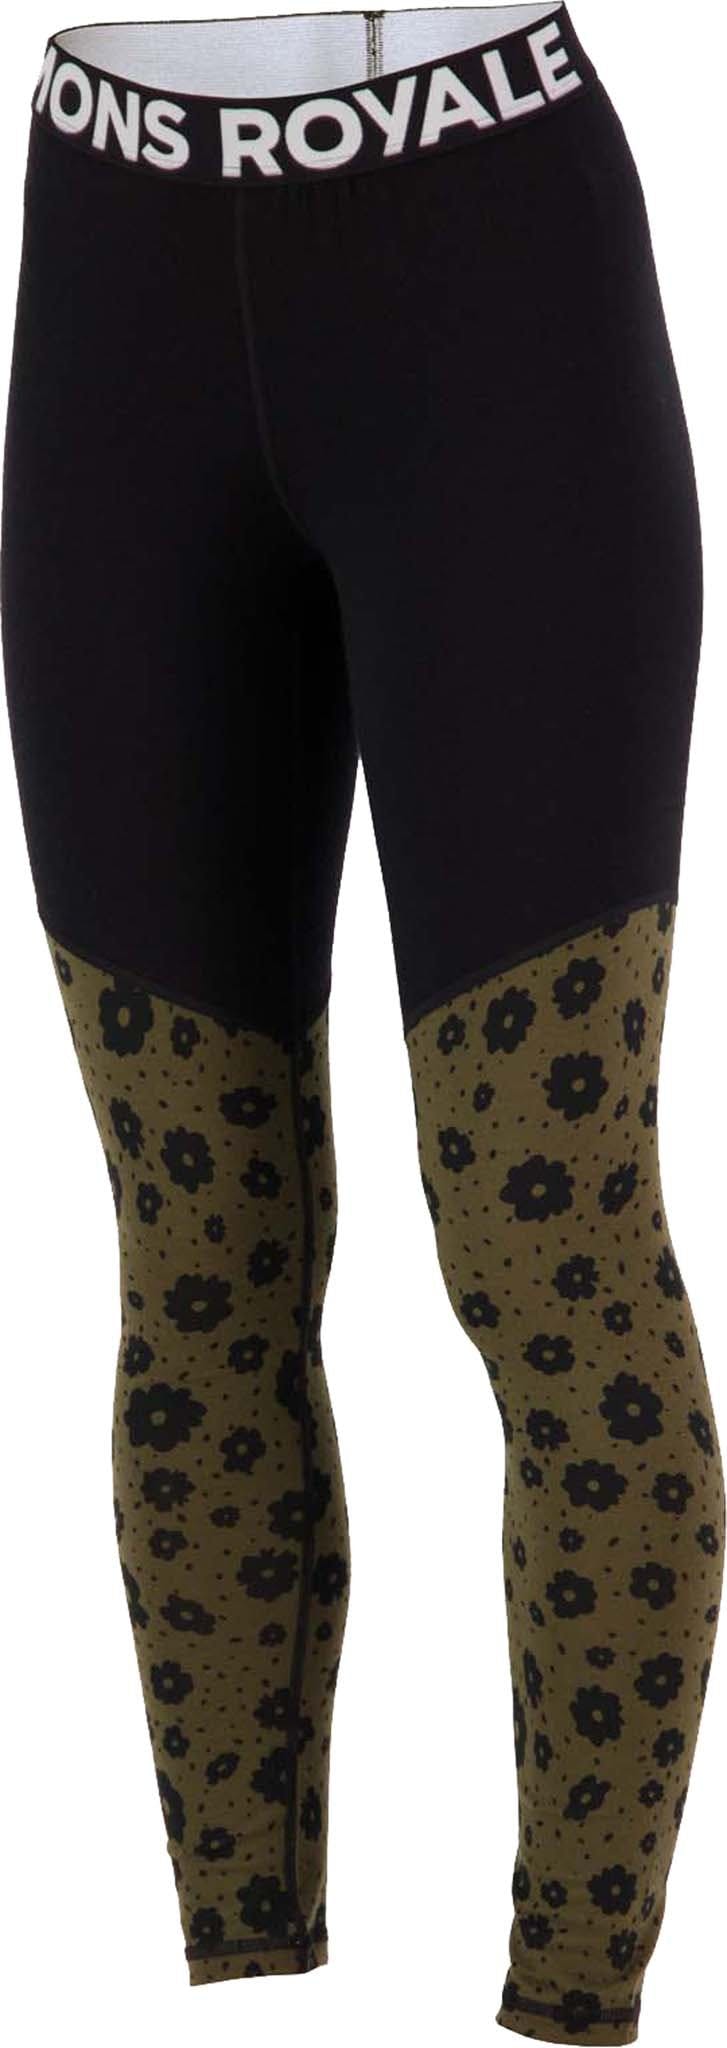 Product image for Cascade Merino Flex 200 Legging - Women's